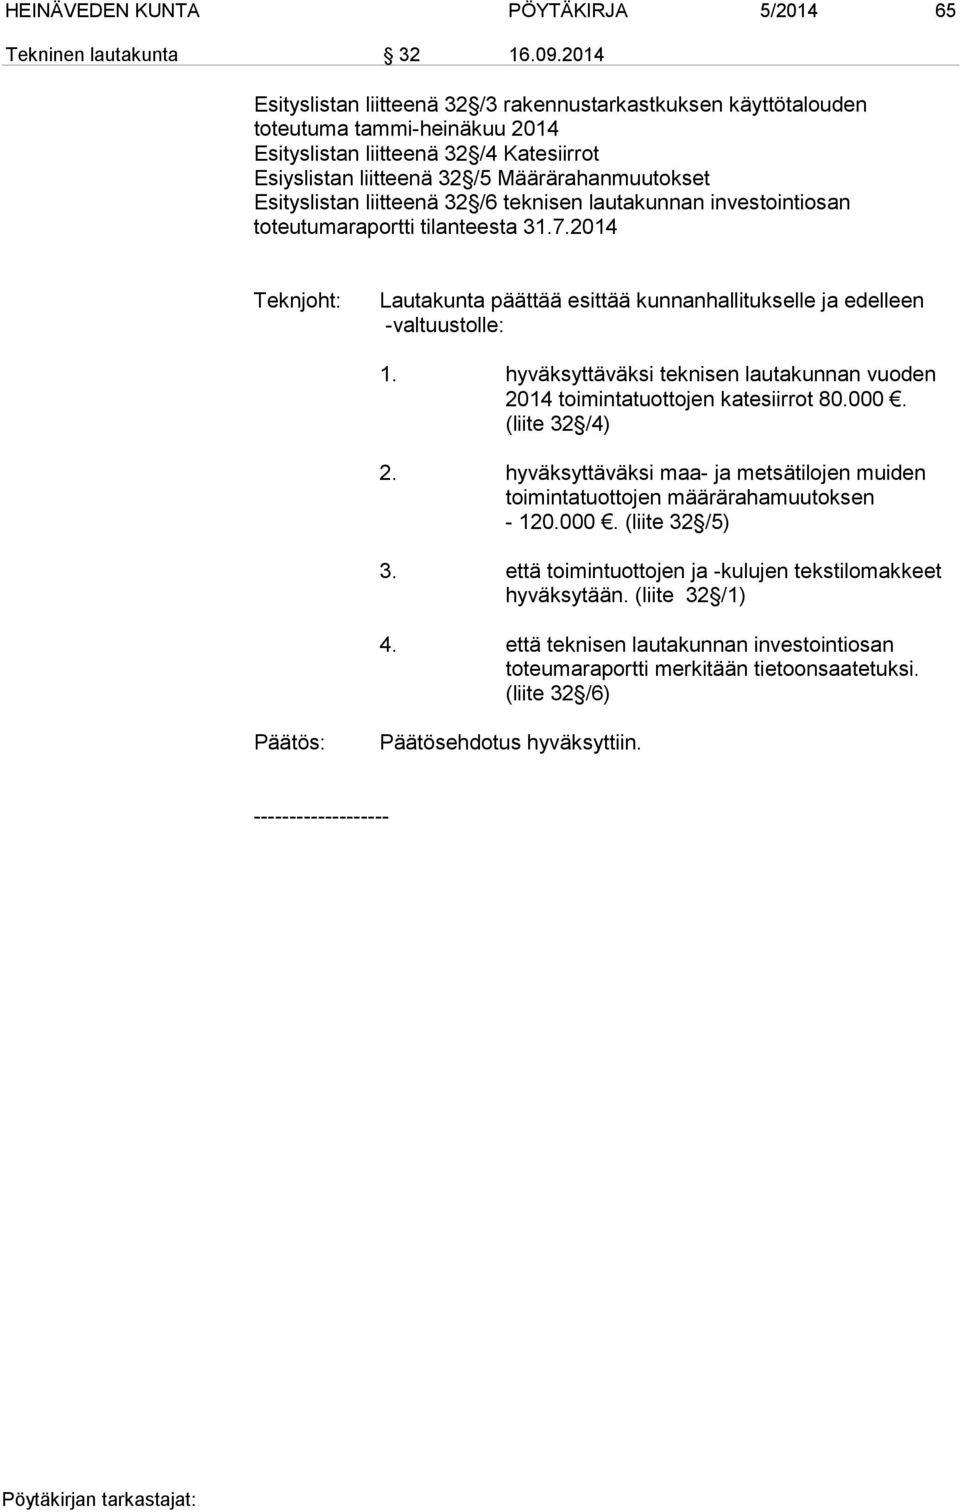 Esityslistan liitteenä 32 /6 teknisen lautakunnan investointiosan toteutumaraportti tilanteesta 31.7.2014 Teknjoht: Lautakunta päättää esittää kunnanhallitukselle ja edelleen -valtuustolle: 1.